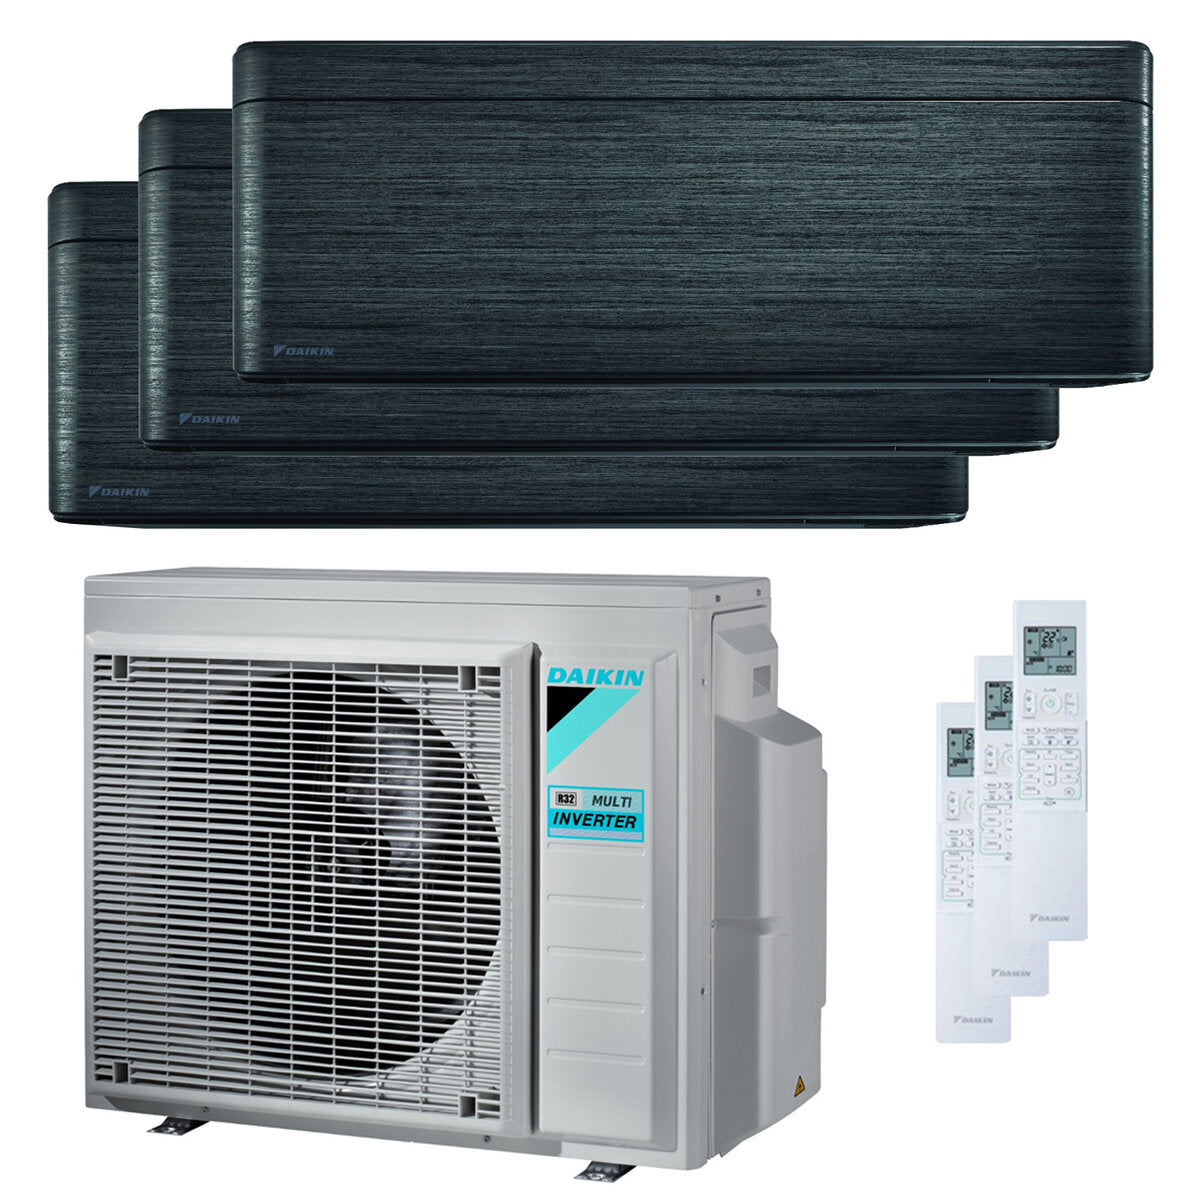 Daikin Stylish Trial Split Klimaanlage 7000 + 7000 + 18000 BTU Inverter A++ WLAN Außengerät 6,8 kW